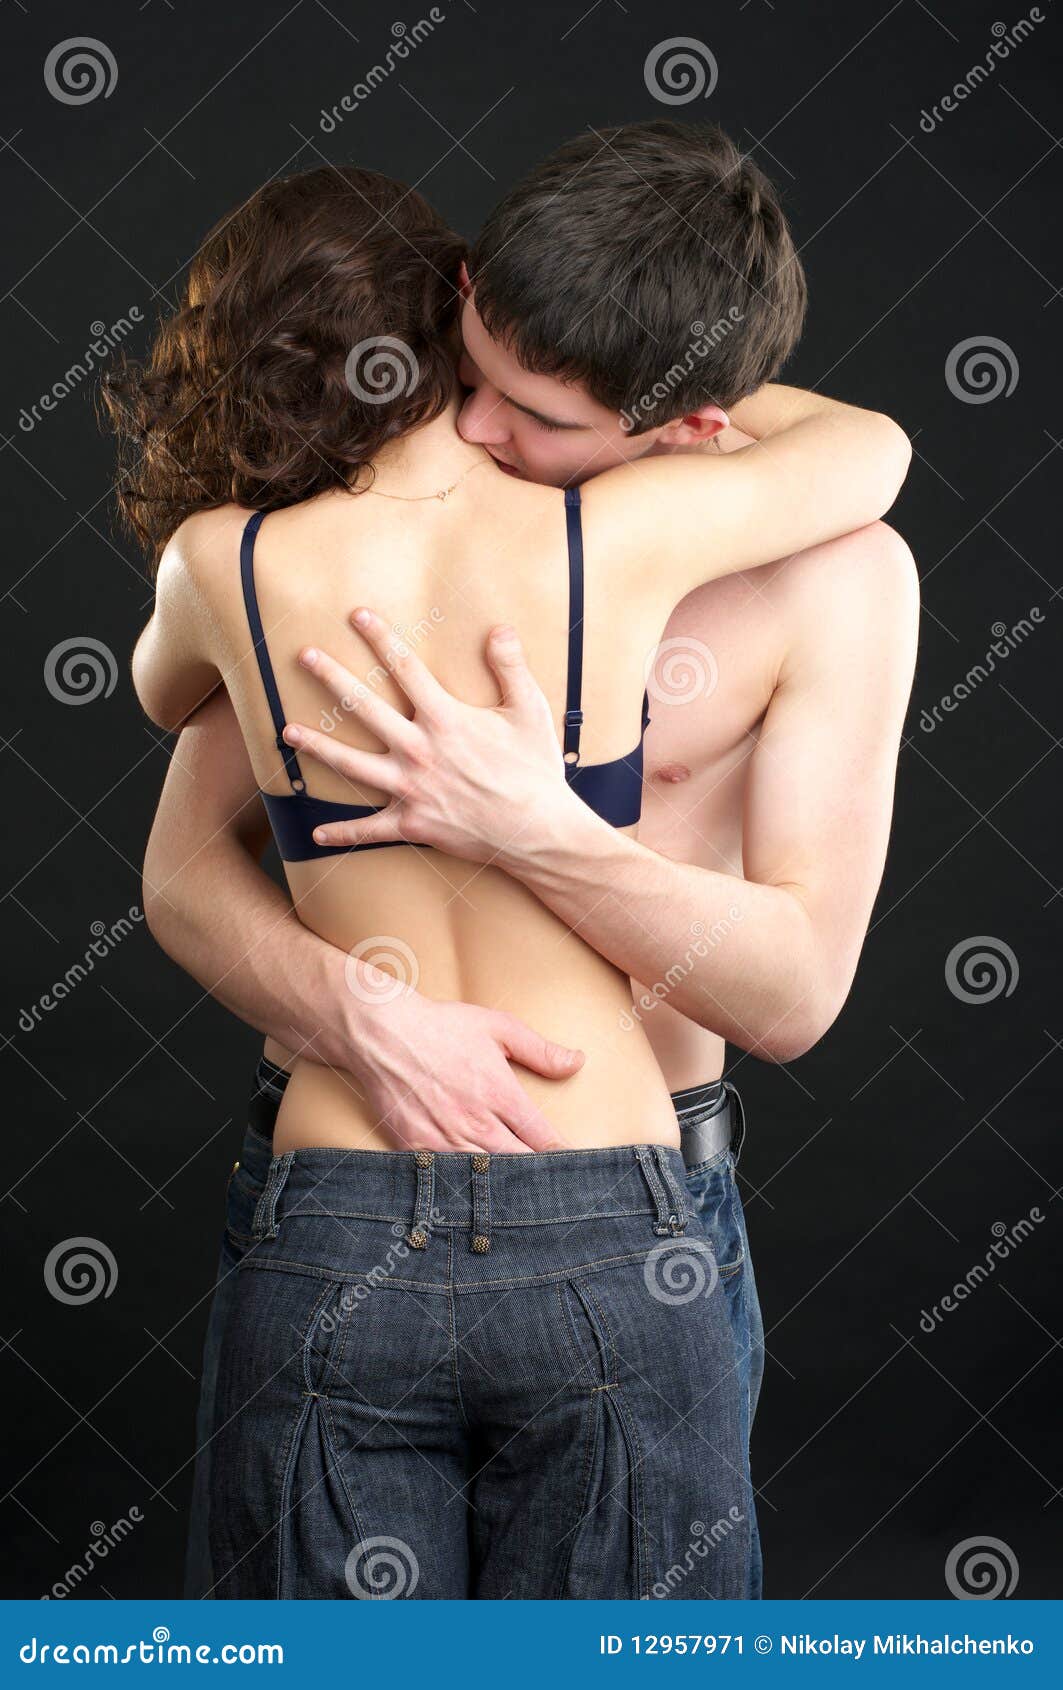 парень при поцелуй трогает грудь фото 3